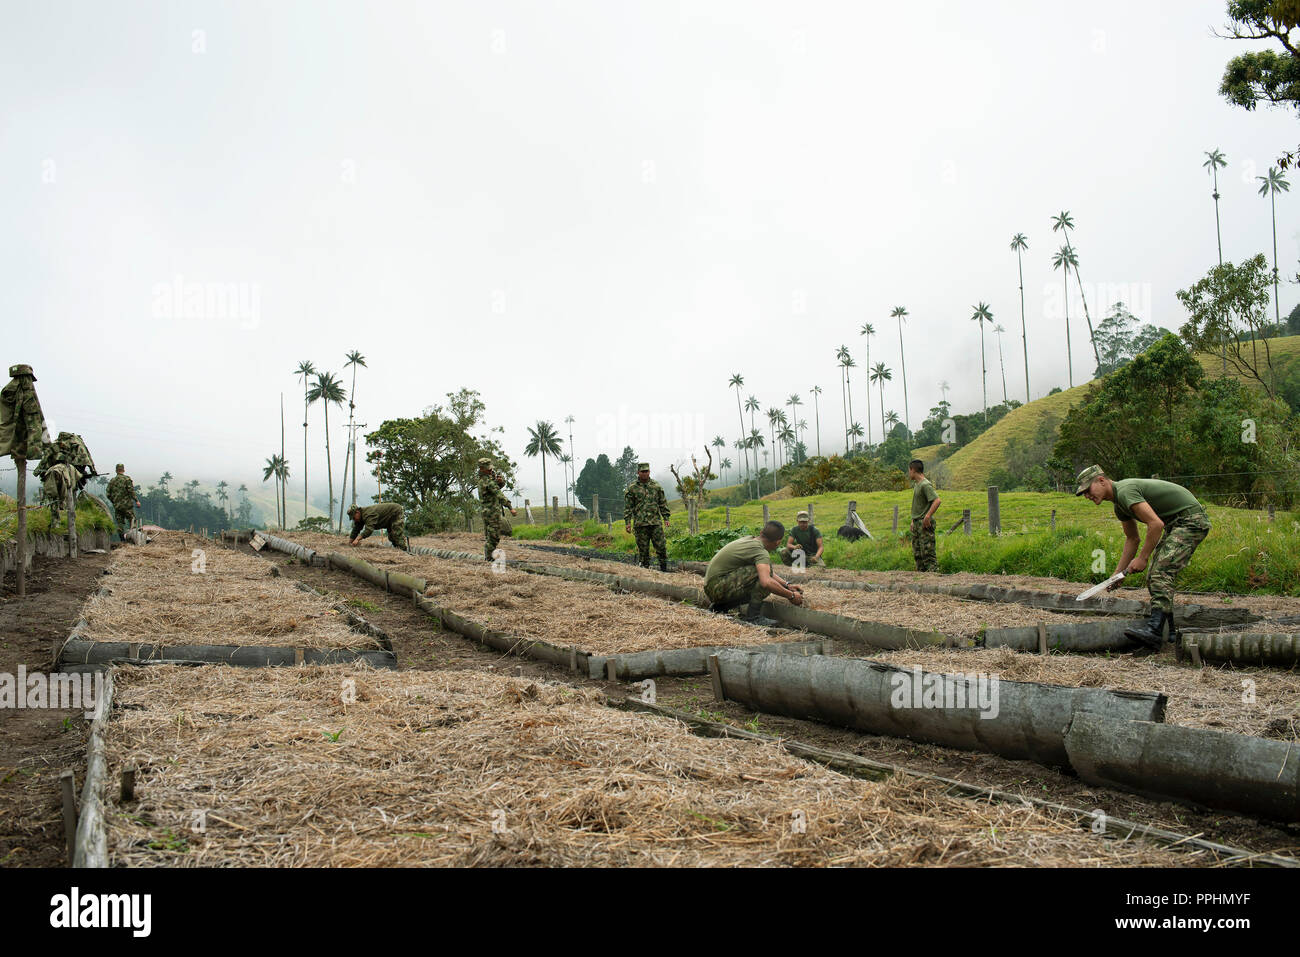 8/10 Reportage photo : l'équipe en action. L'Armée nationale travaillant sur la plantation de palmiers de cire dans la vallée de Cocora, Colombie. 13 Sep 2018 Banque D'Images